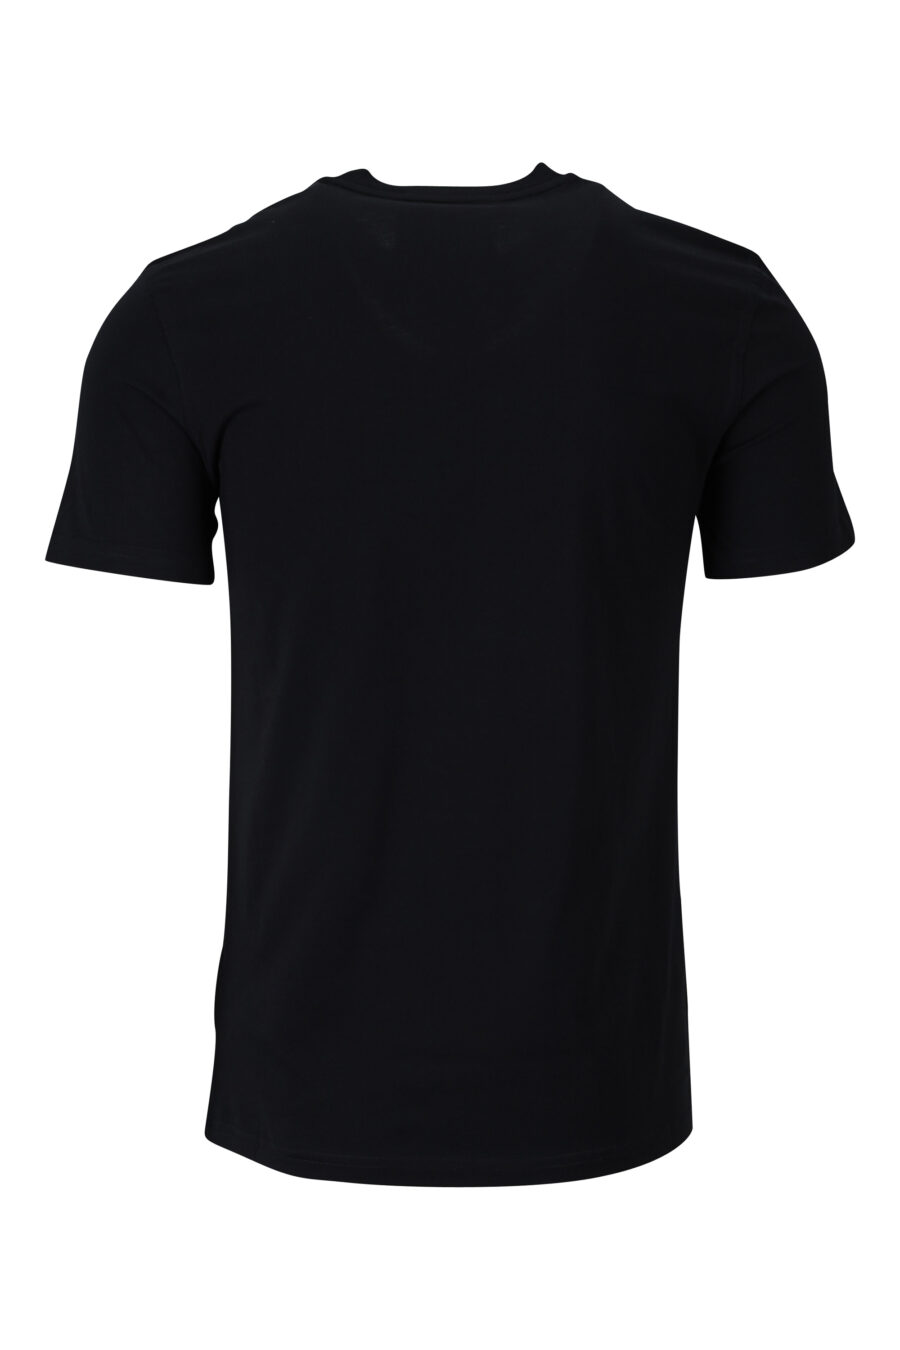 Camiseta negra de algodón ecológico con maxilogo "teddy" - 889316854589 1